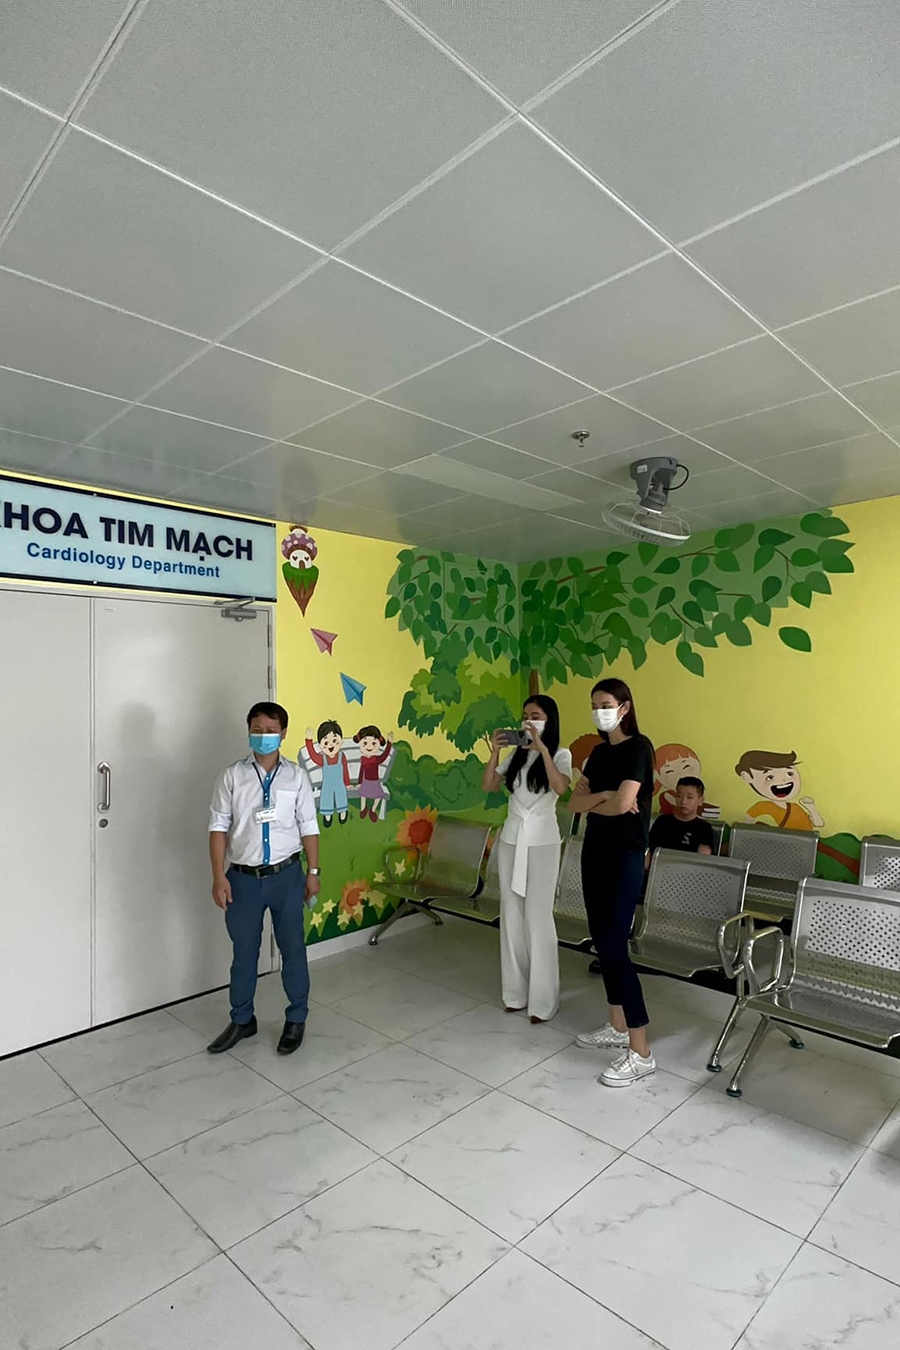 Thùy Tiên cùng bà Phạm Kim Dung làm 'Những điều nhỏ xíu': Ủng hộ 200 triệu đồng tiền viện phí cho bệnh nhân